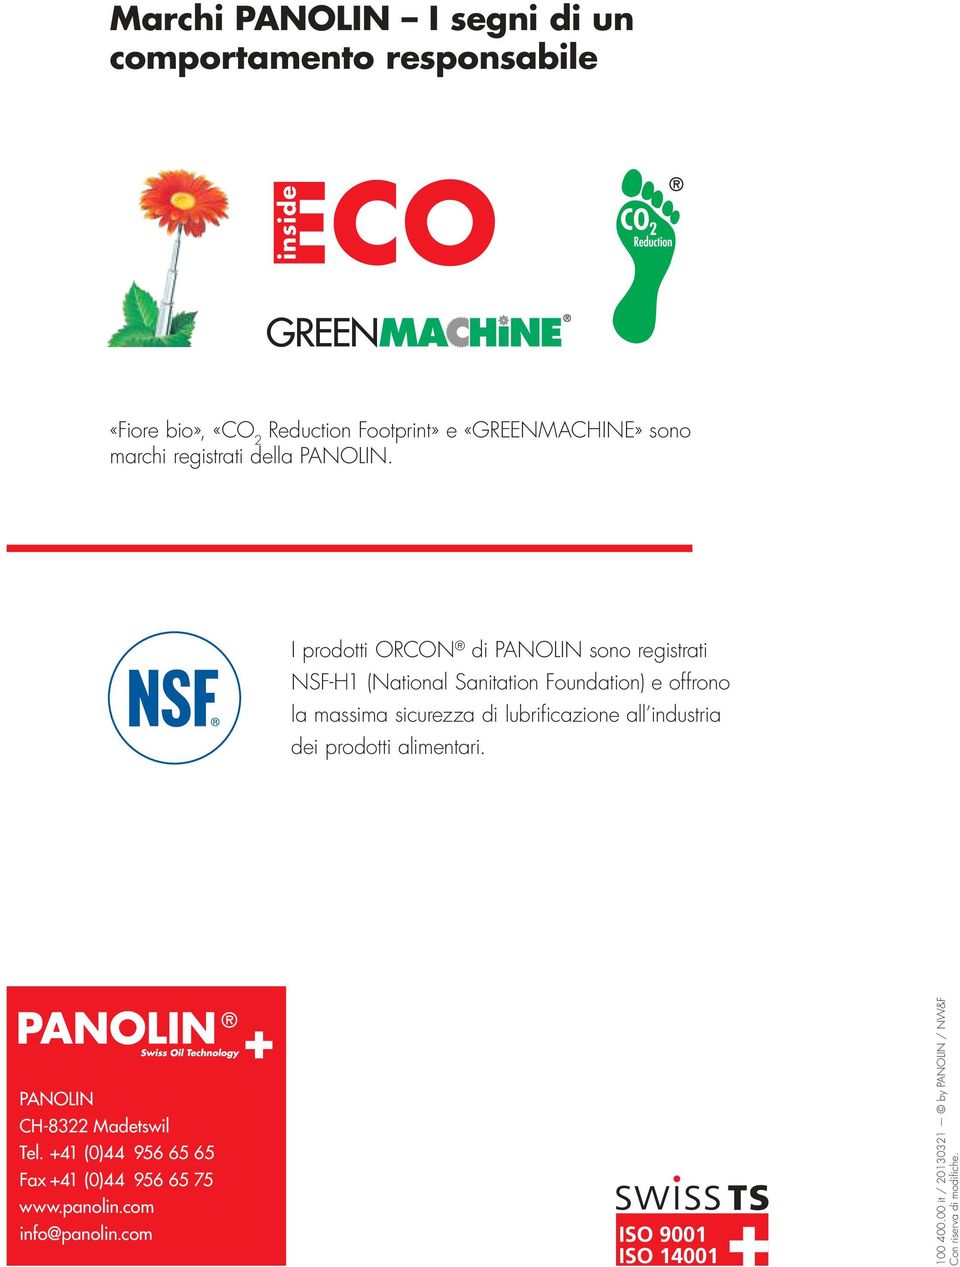 I prodotti ORCON di PANOLIN sono registrati NSF-H1 (National Sanitation Foundation) e offrono la massima sicurezza di